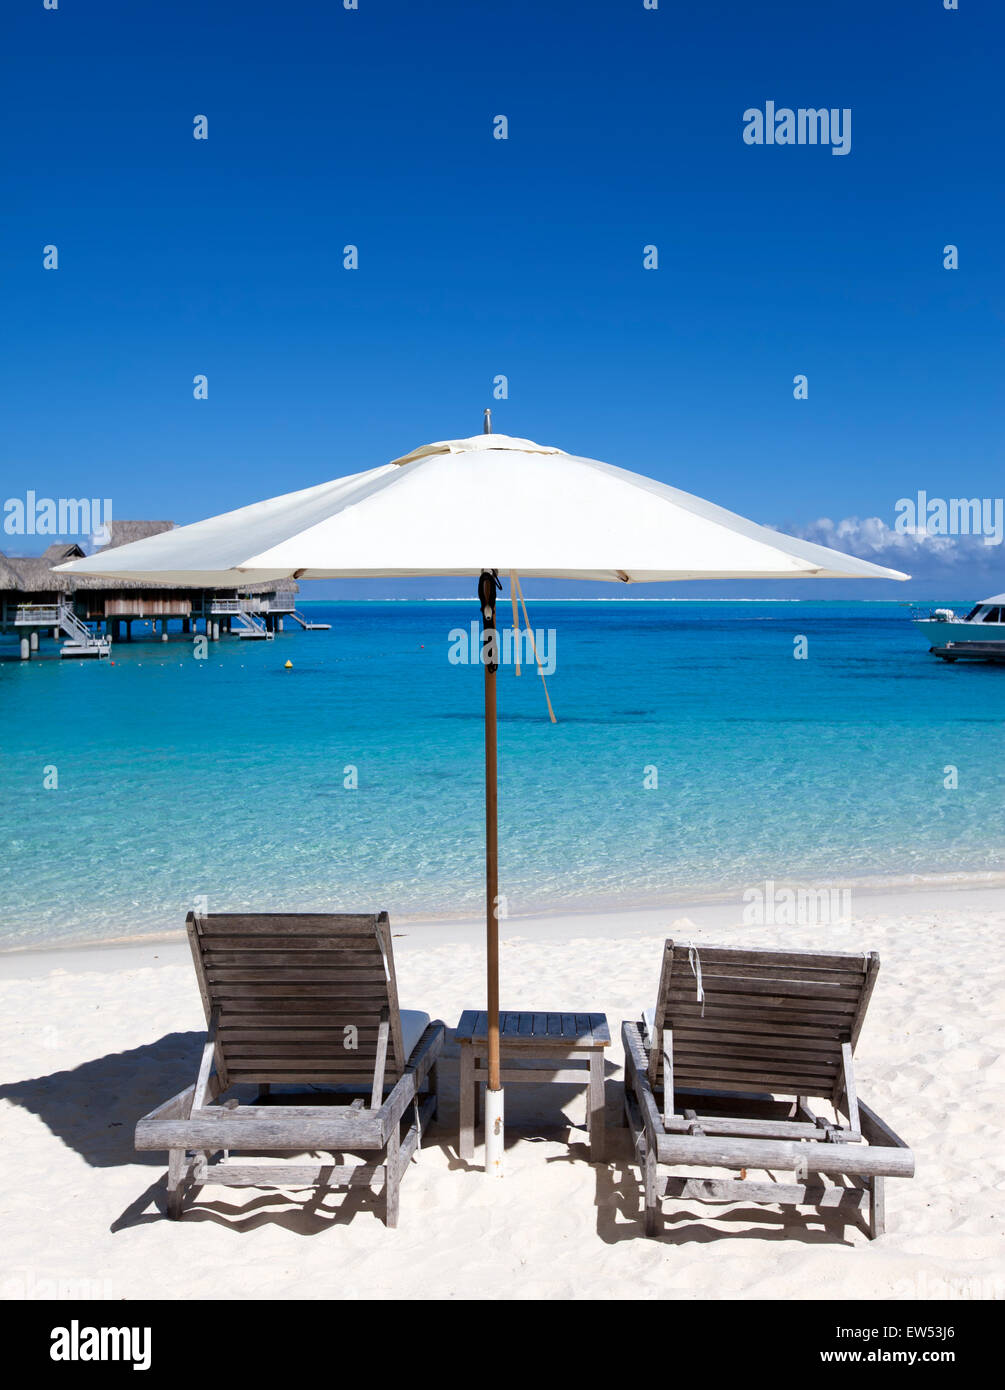 Sun protection umbrellas, beach, sea. Stock Photo